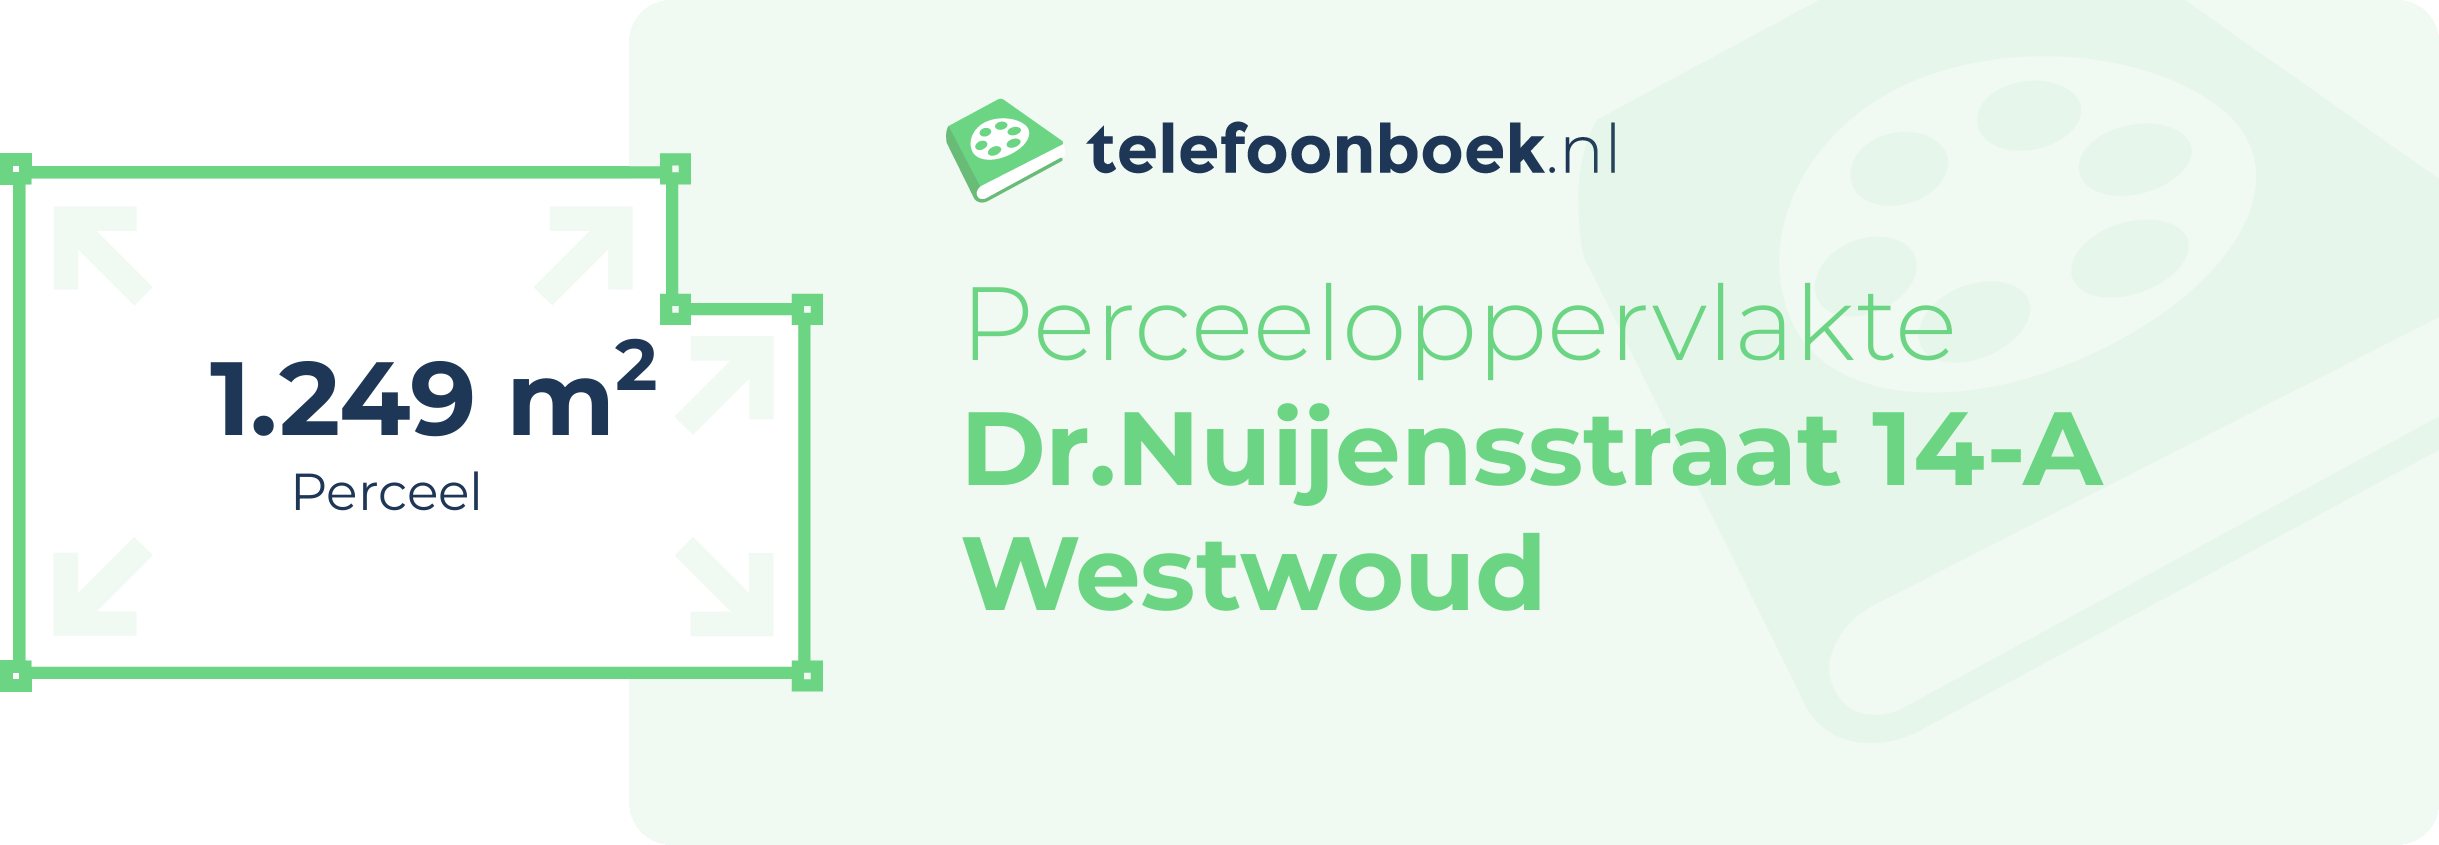 Perceeloppervlakte Dr.Nuijensstraat 14-A Westwoud